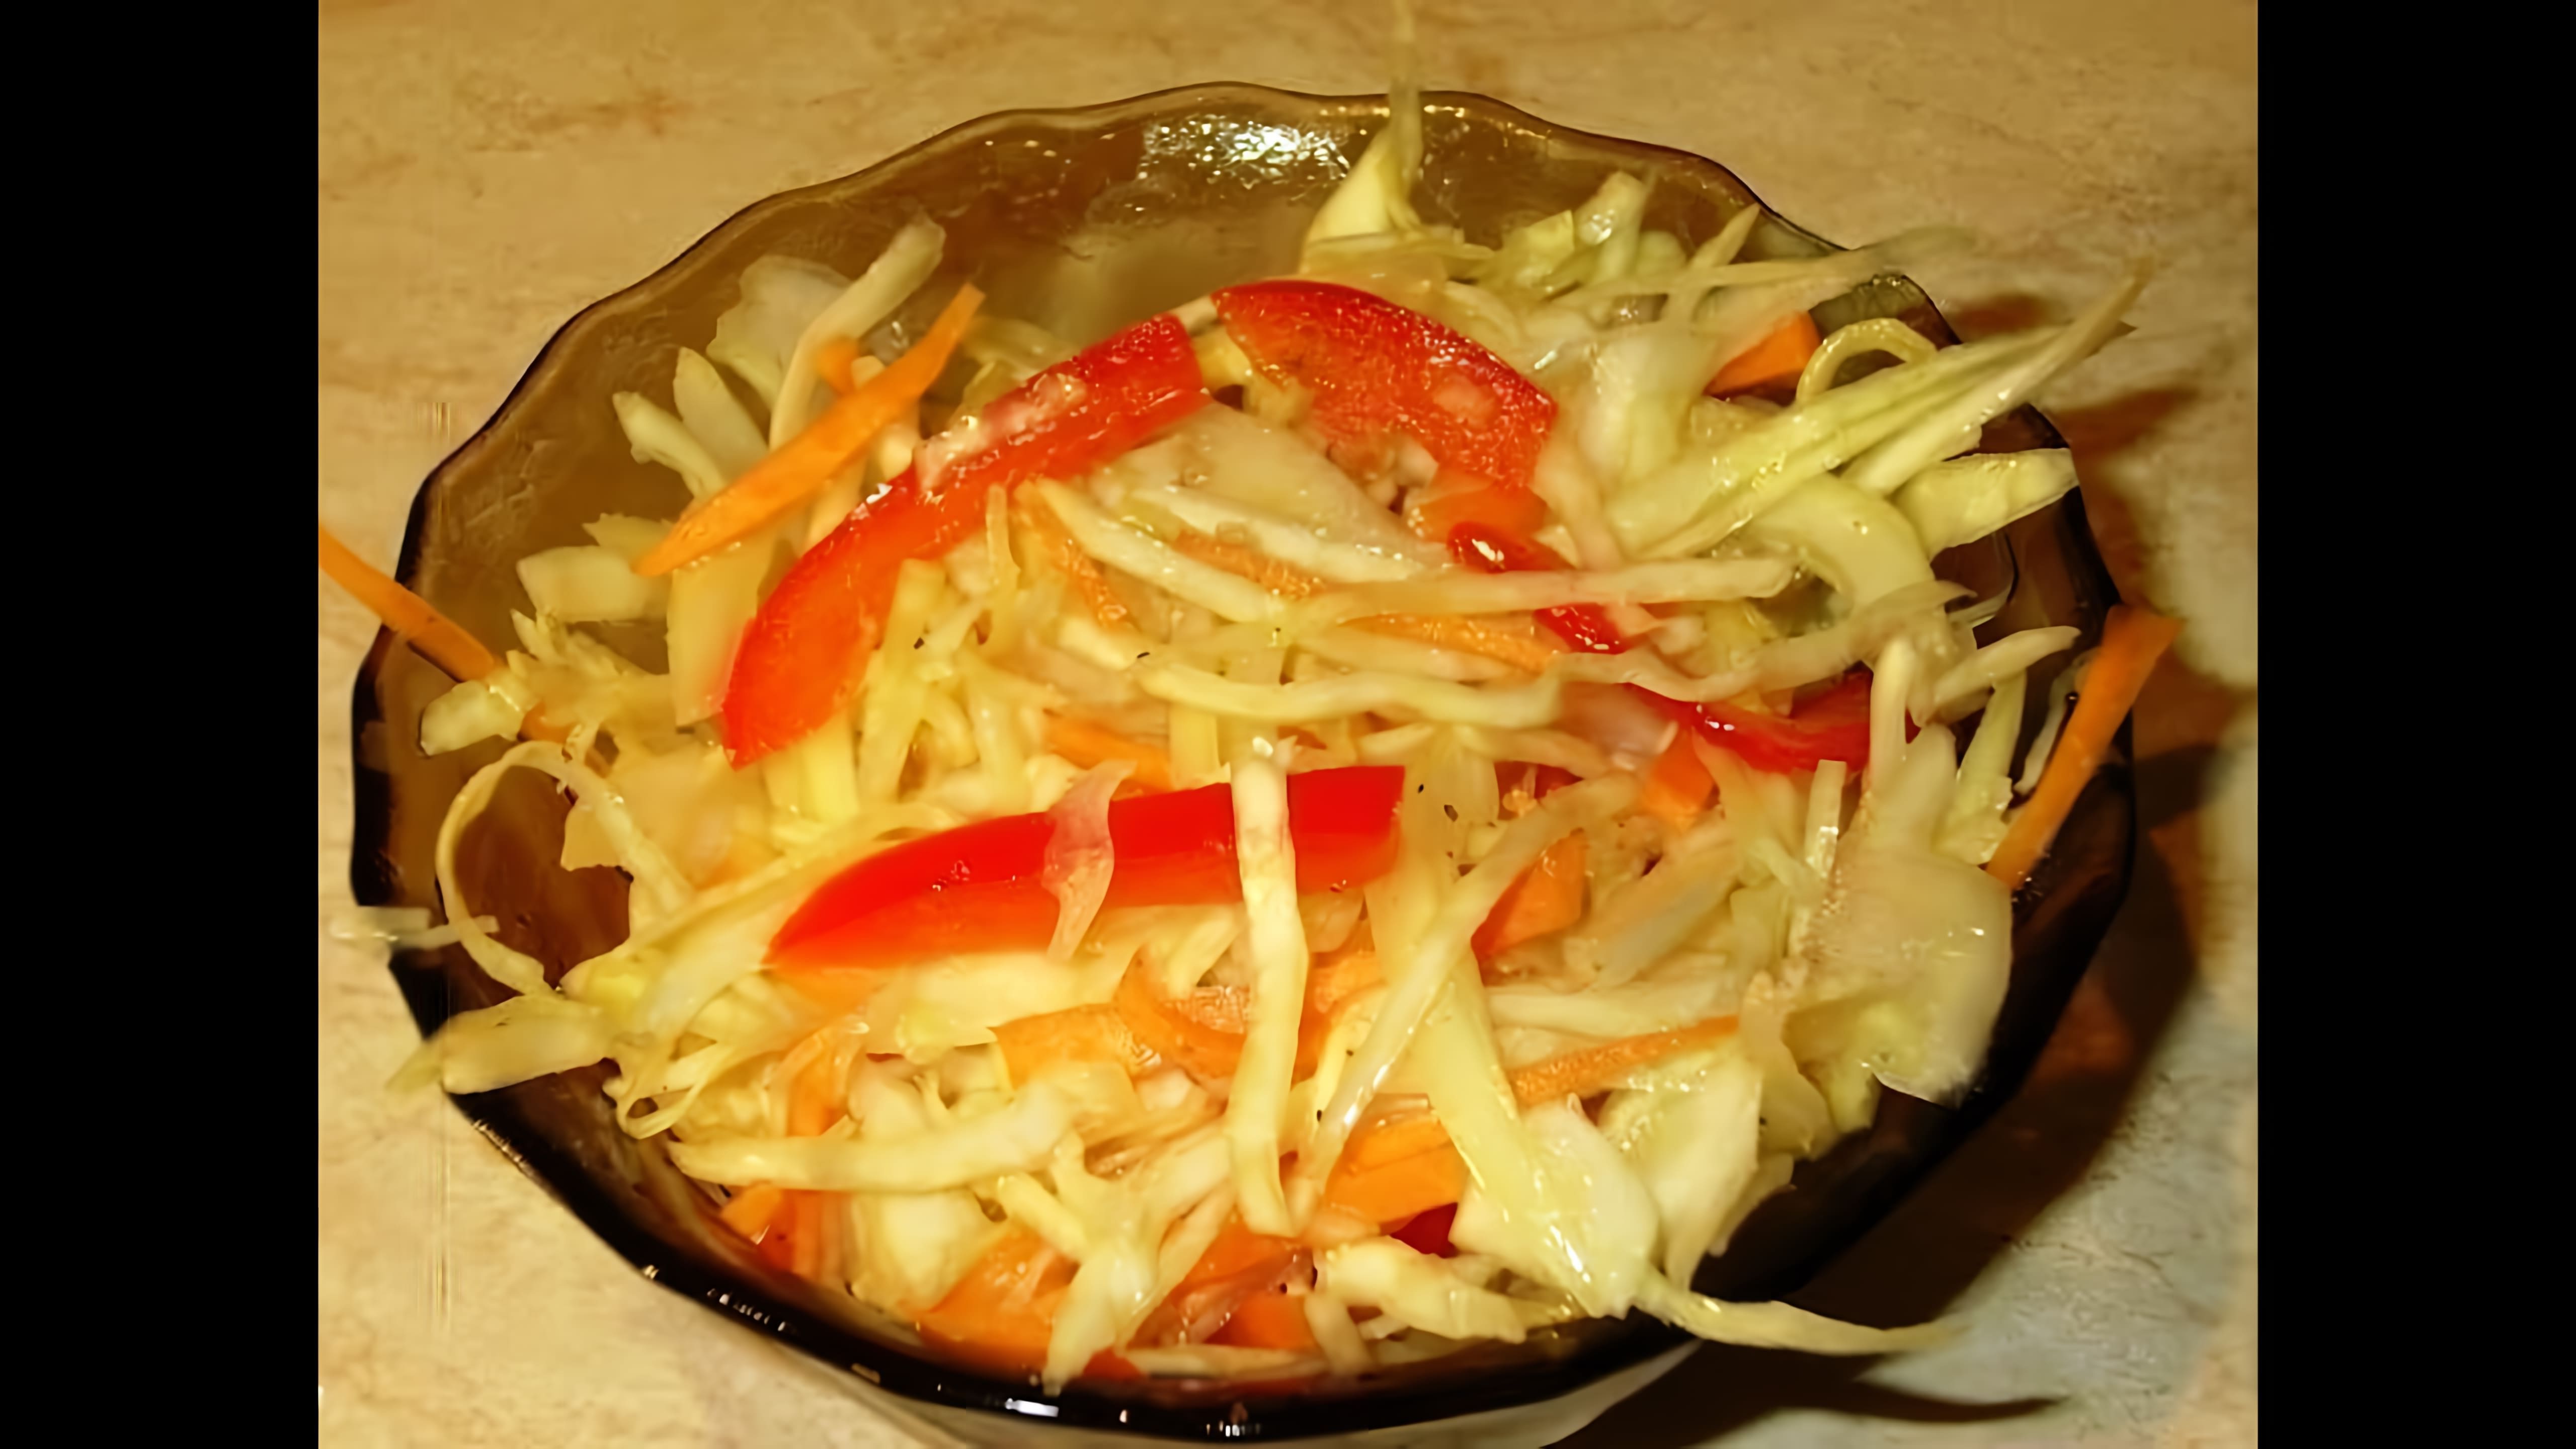 Салат из сырых овощей - это вкусное и полезное блюдо, которое можно приготовить в домашних условиях